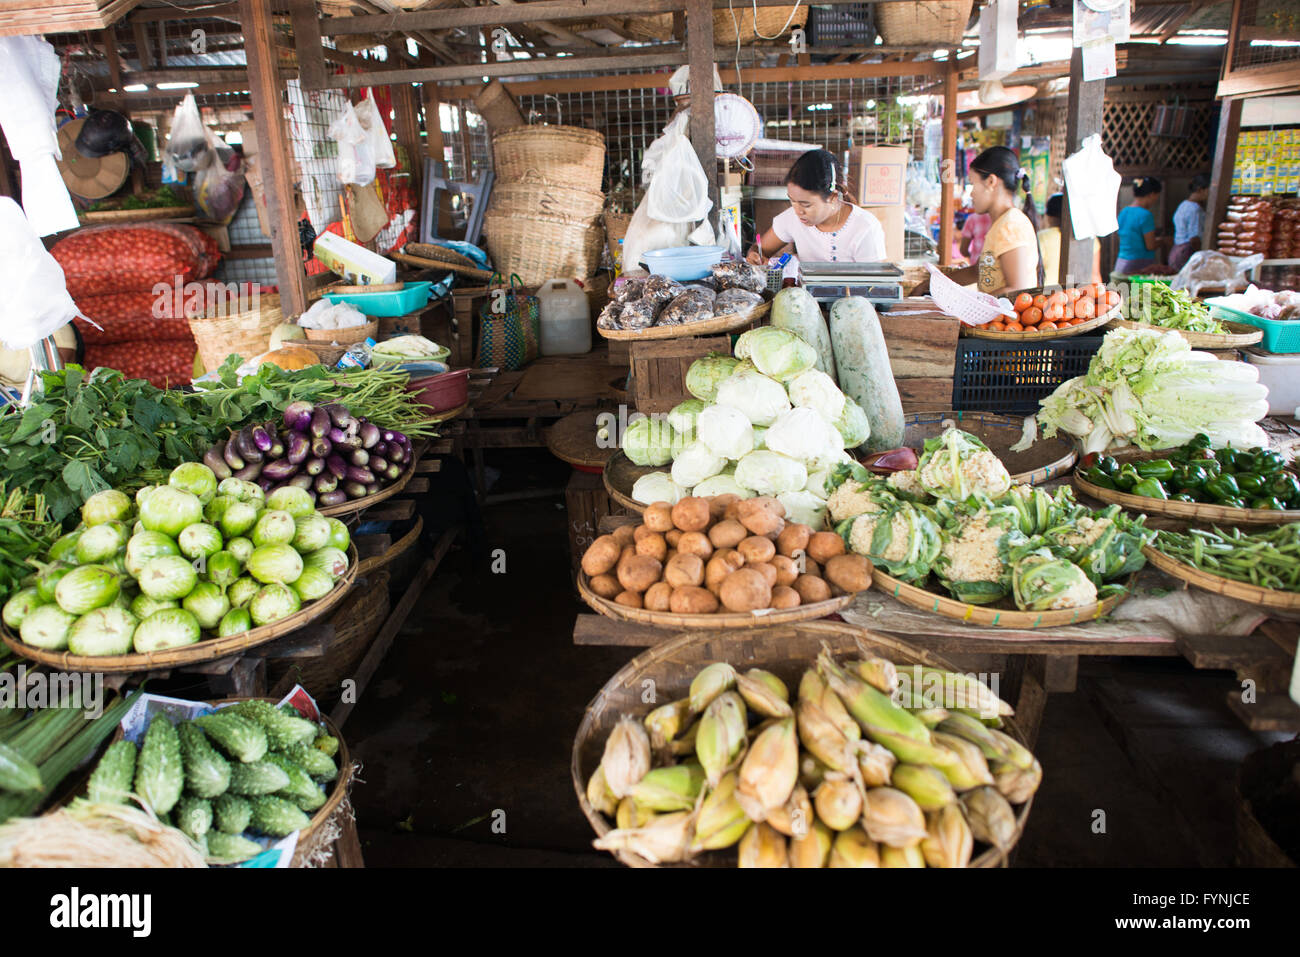 NYAUNG-U, Myanmar - frutta e verdura fresca per la vendita a Nyaung-U Mercato, vicino a Bagan, Myanmar (Birmania). Il mercato è anche noto come Mani Sithu mercato. Foto Stock